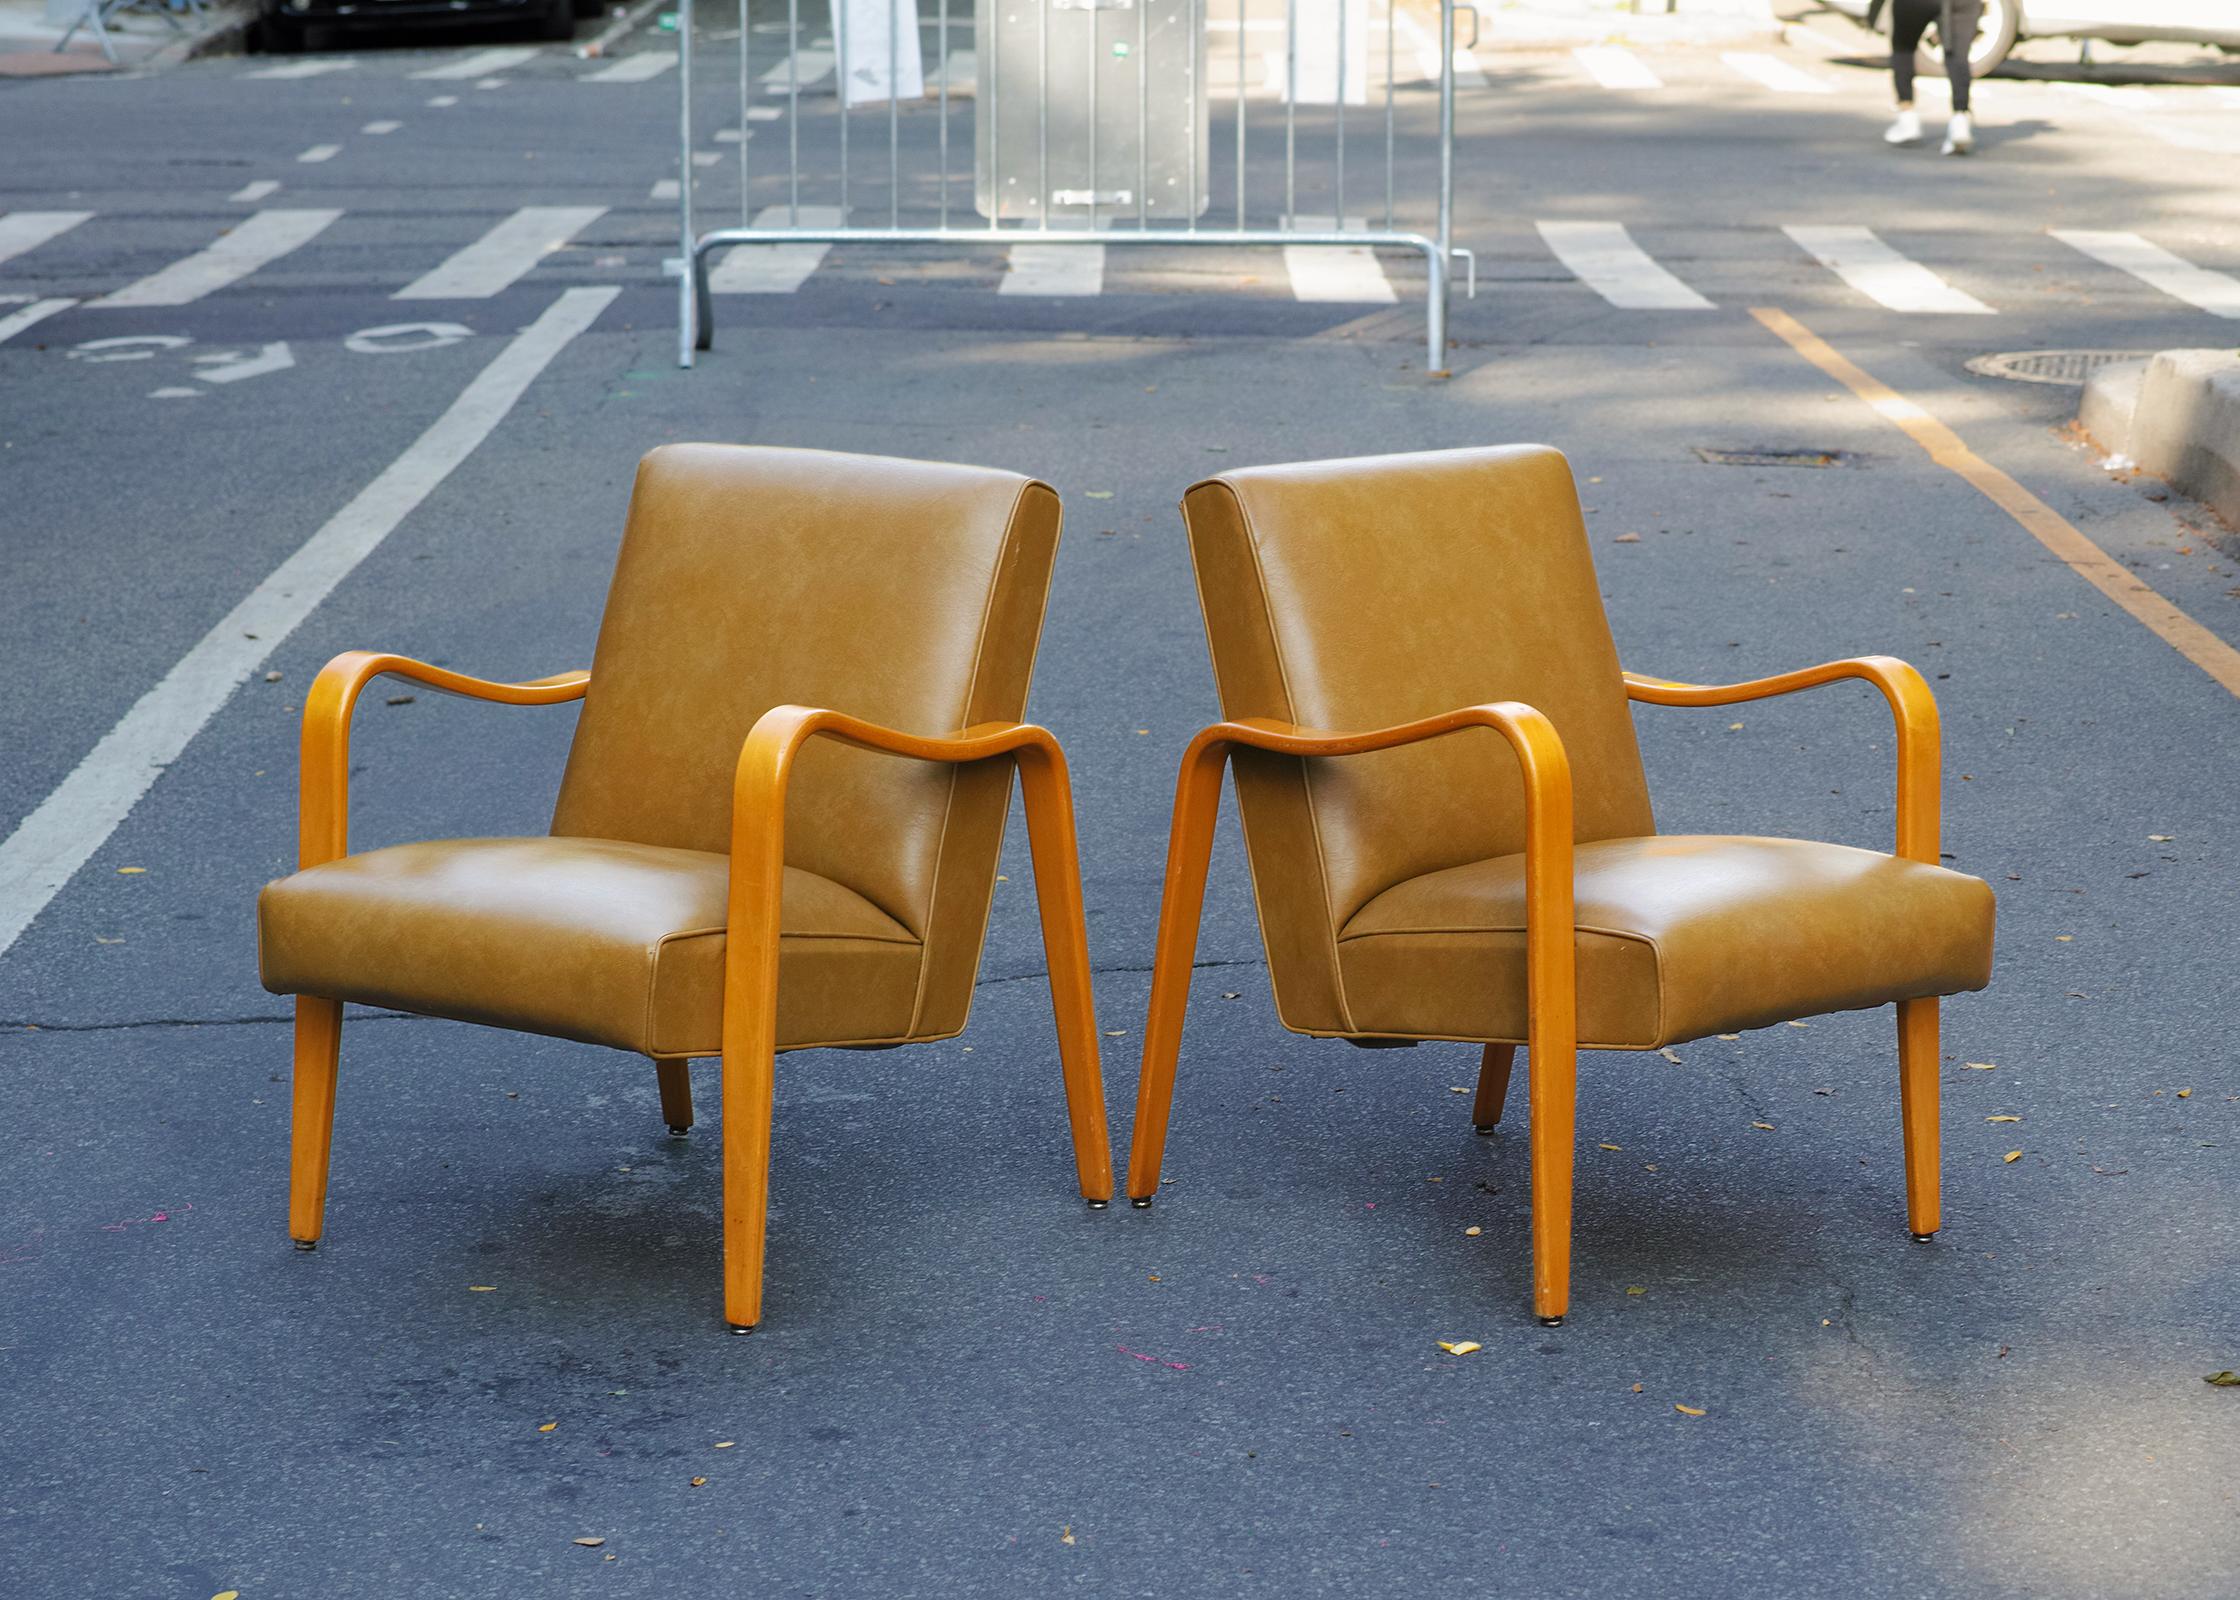 Wir bieten Ihnen ein Paar Lounge-Sessel von Thonet aus den 1960er Jahren mit originaler Vinylpolsterung und originaler Holzoberfläche. Die Arme und Beine werden aus einem einzigen Stück dampfgebogenen Schichtholzes geformt, das ein